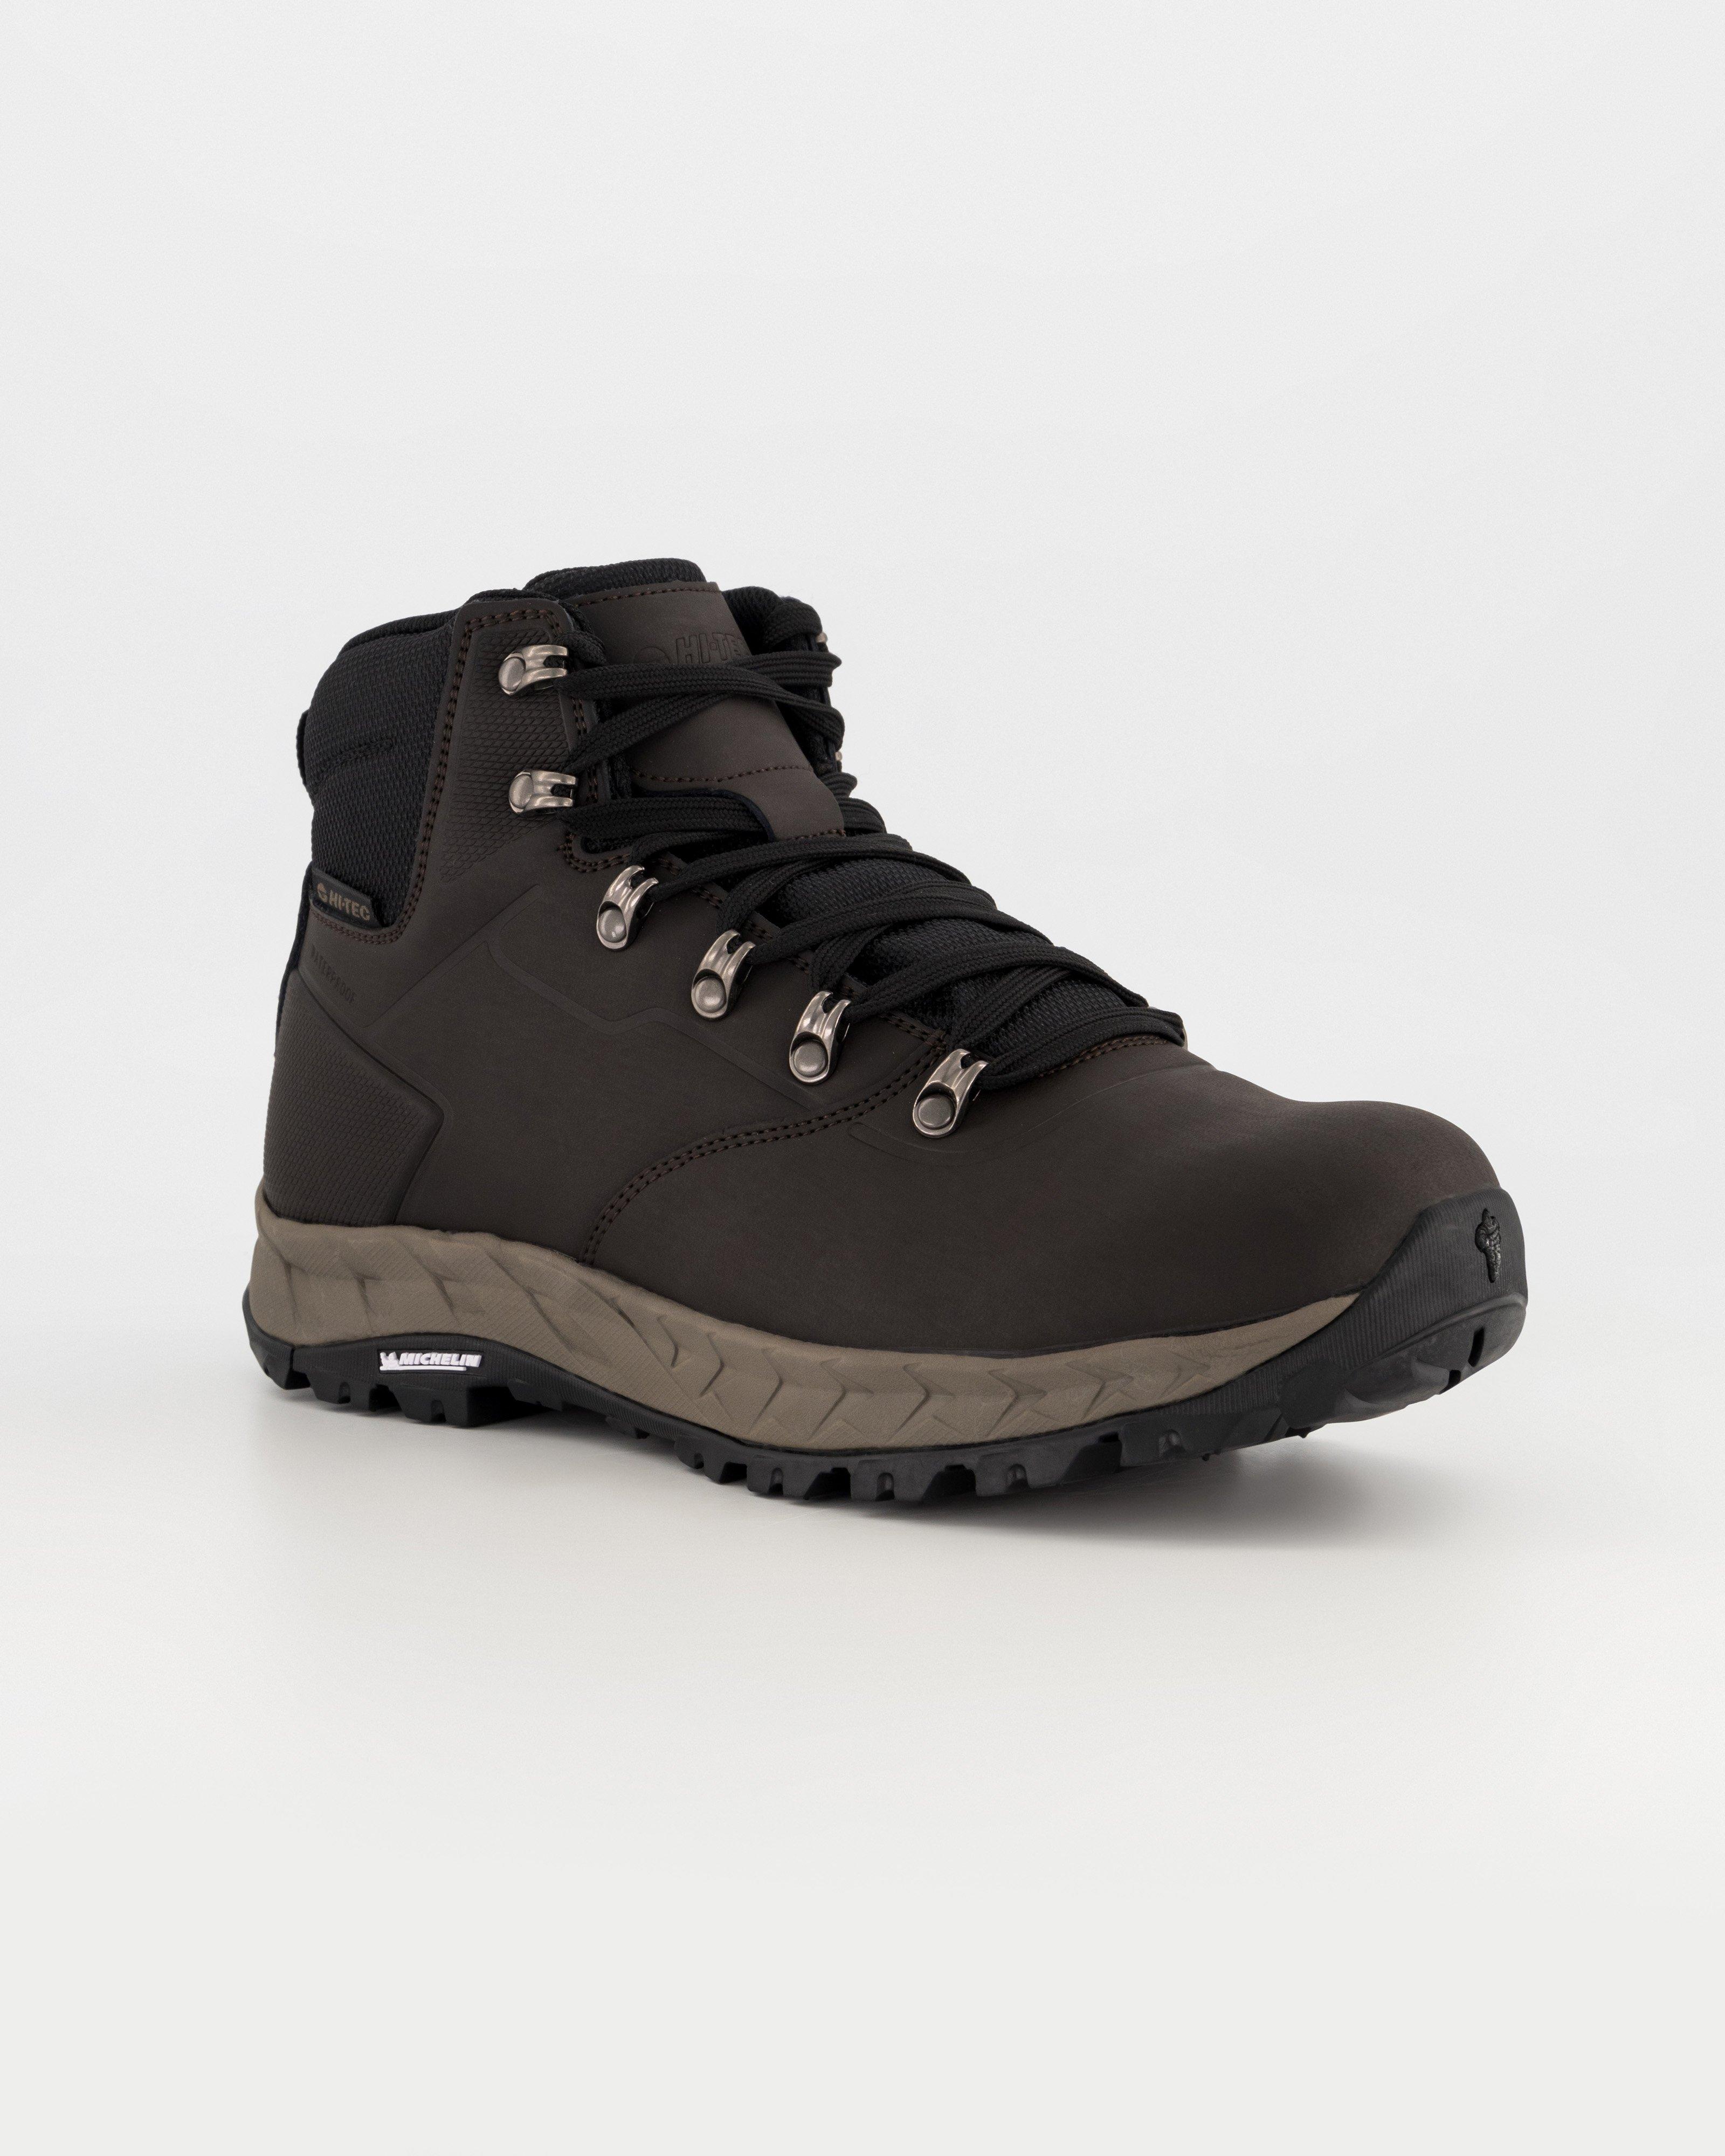 Hi-Tec Men’s Altitude 7 Mid Hiking Boots -  Chocolate